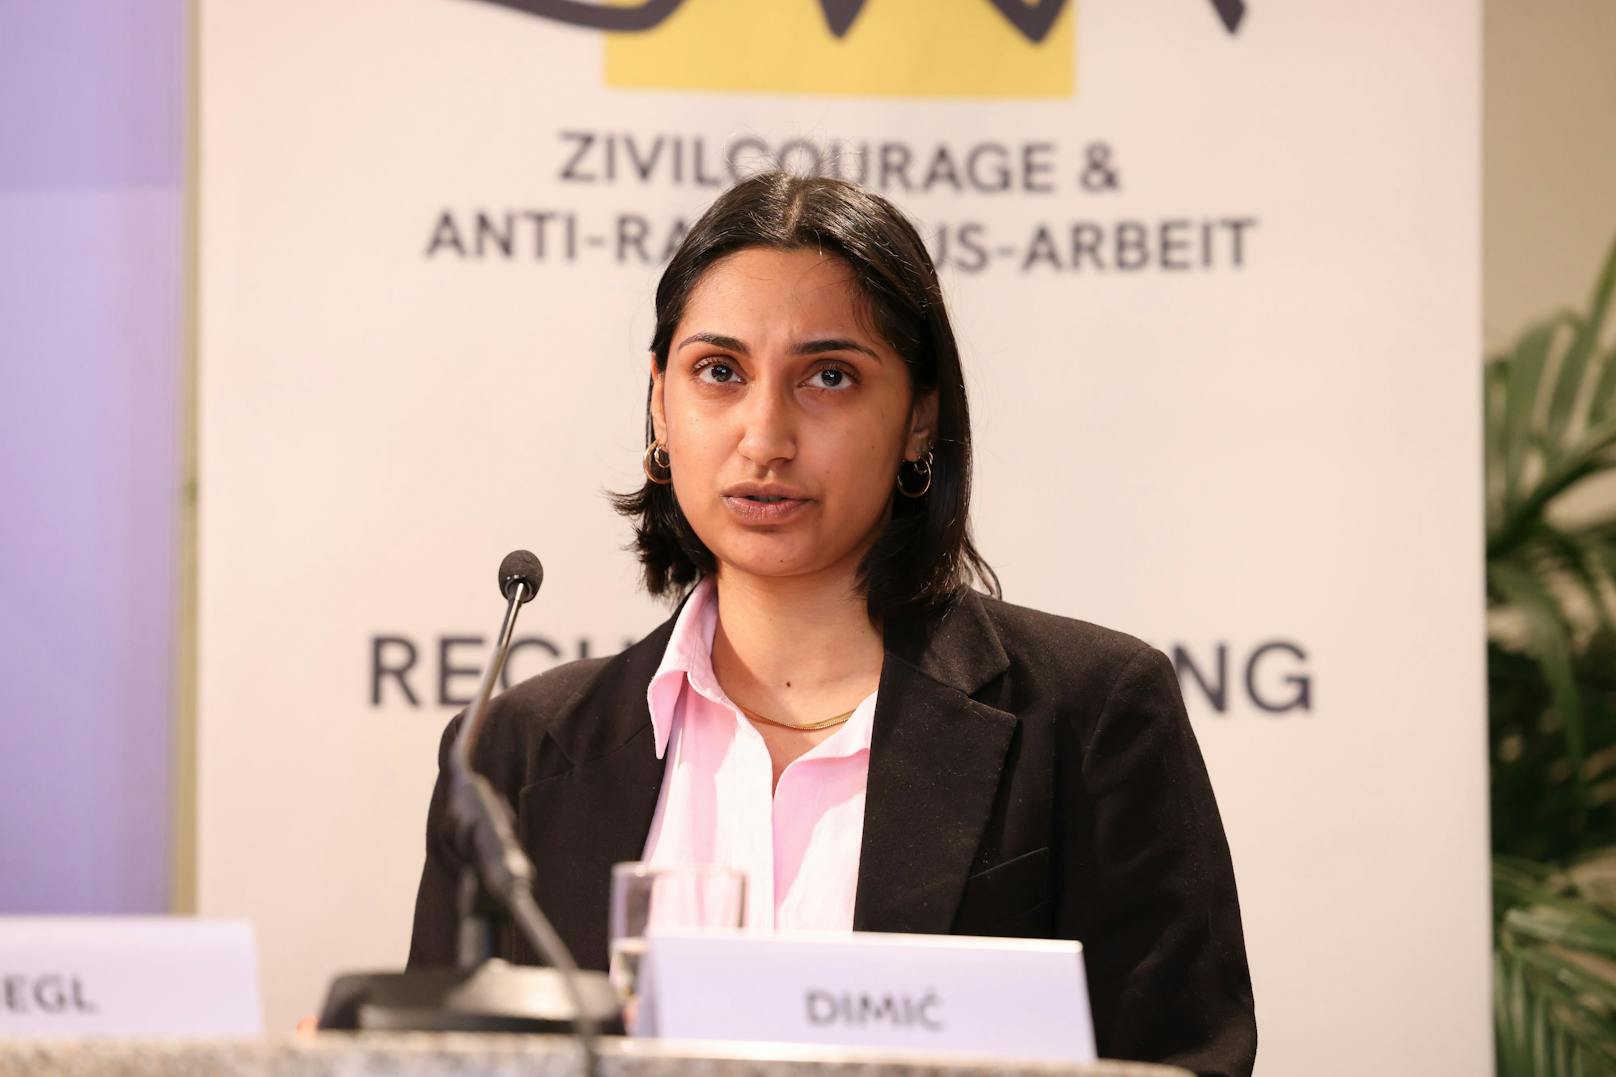 Saska Dimic von der Hoch Hochschüler*innenschaft Österreichischer Roma und Romnja weist auf die Diskriminierung von Bevölkerungsgruppen hin.